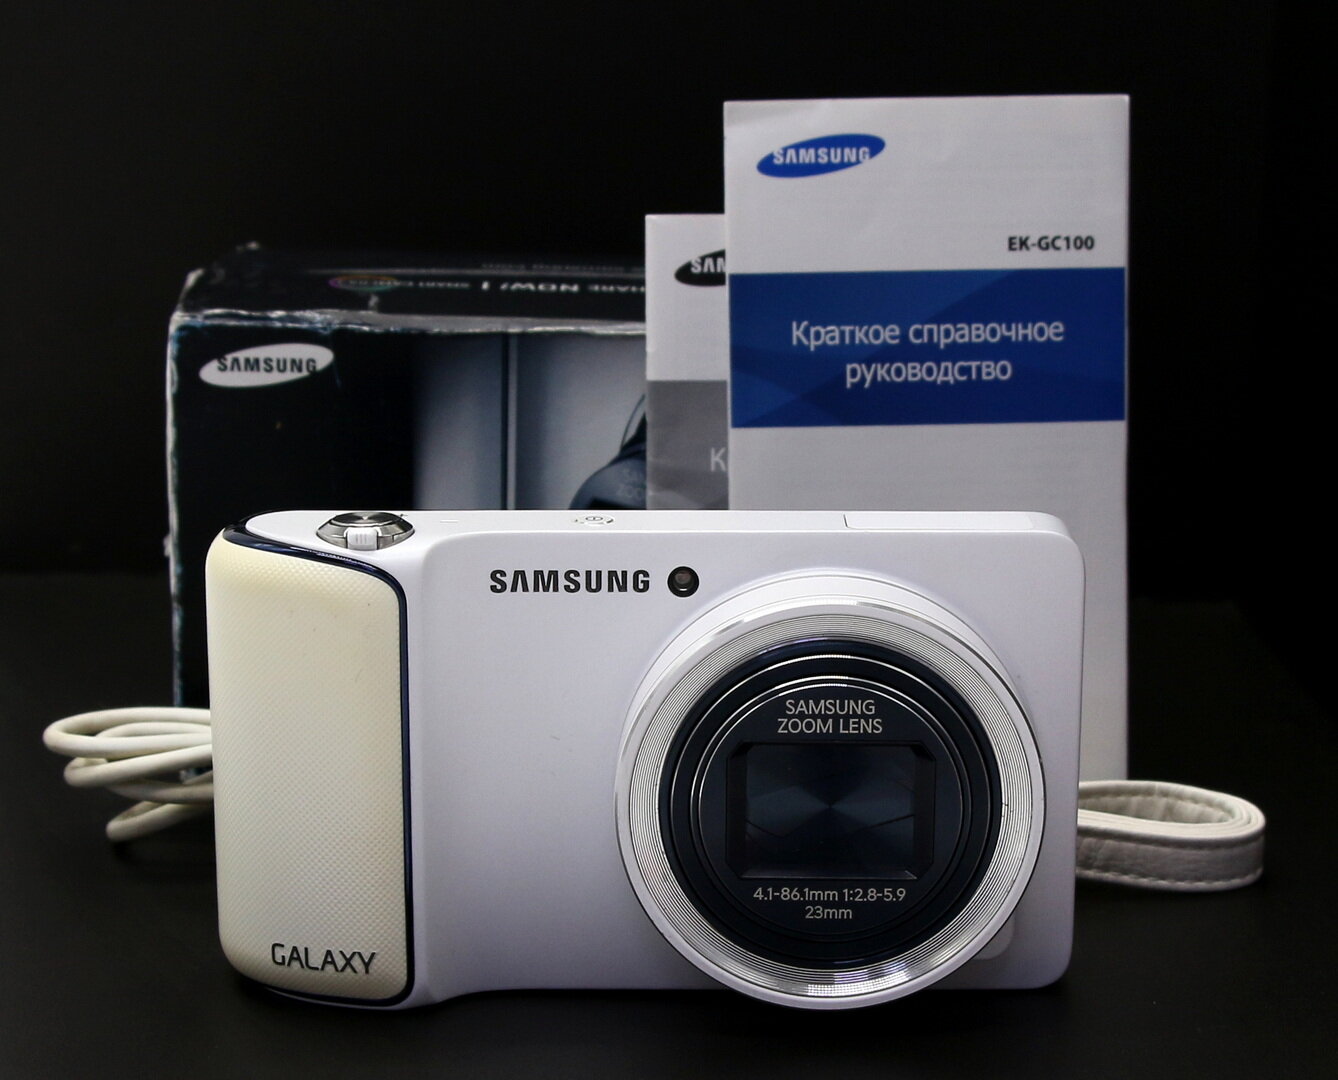 Samsung Galaxy Camera EK-GC100 в упаковке